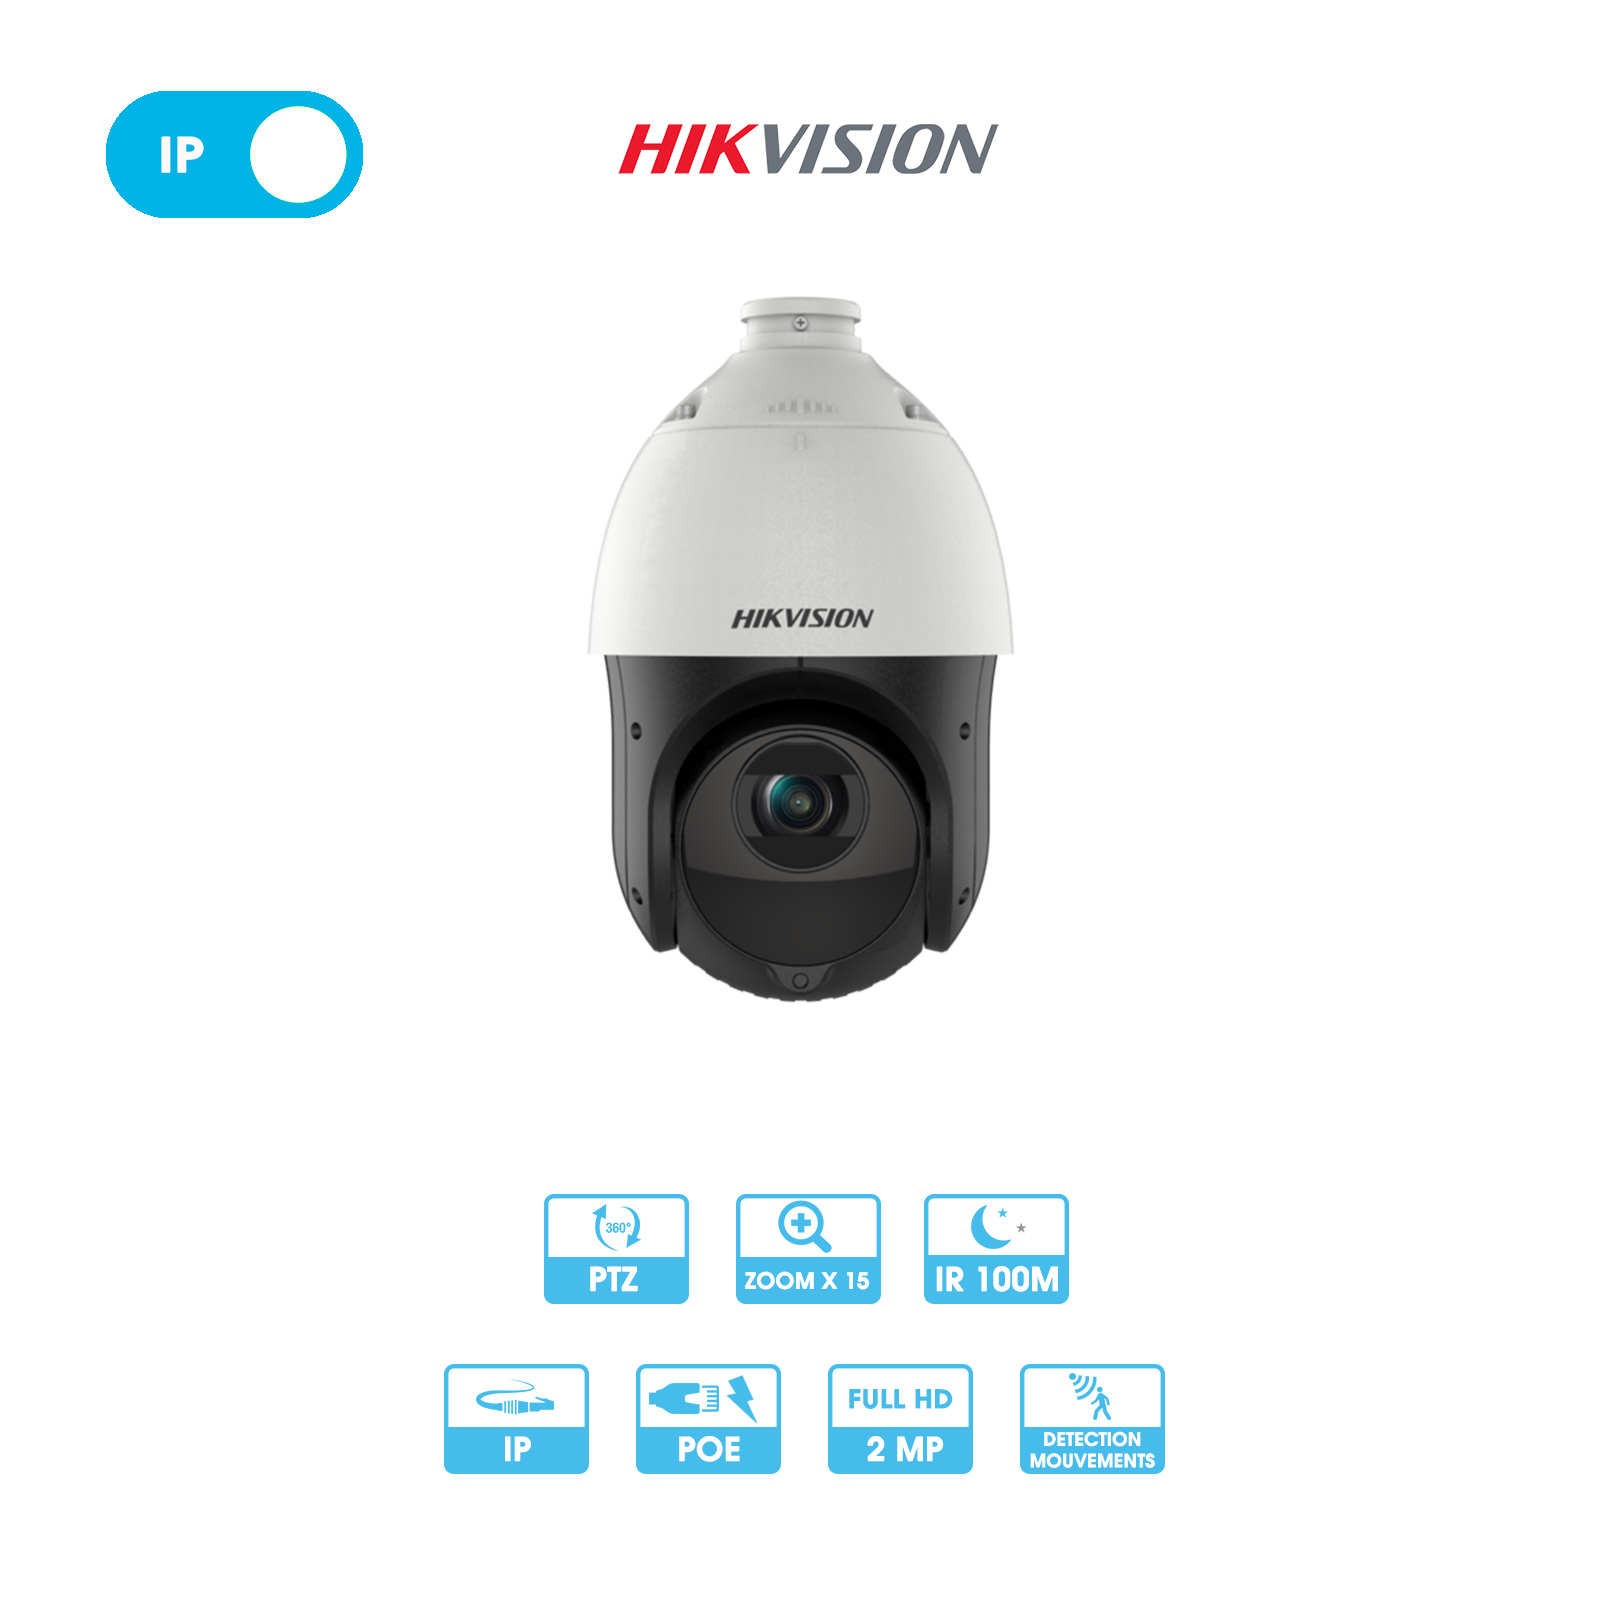 Caméra réseau Hikvision | Dôme PTZ (rotative, vision 360°) | 2 MP | IP PoE | Zoom x 15 | Infrarouge 100 mètres